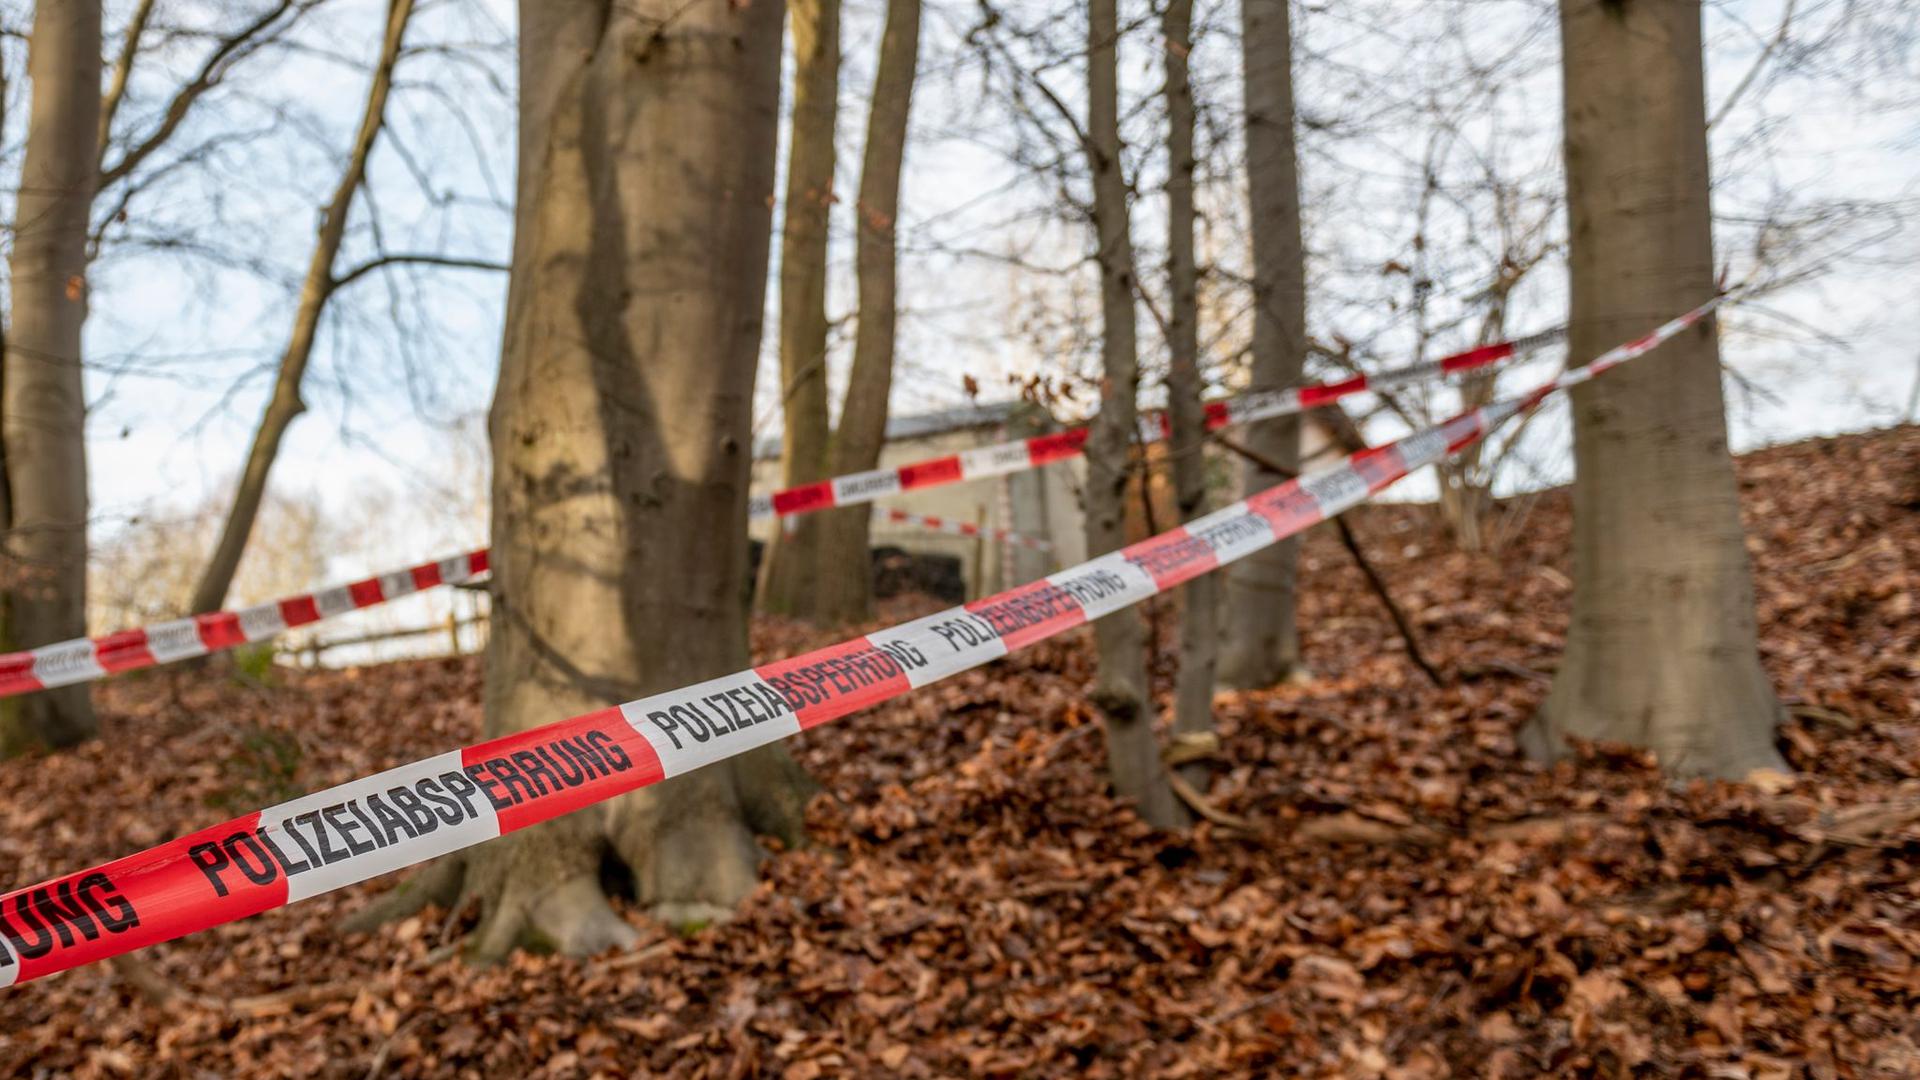 In diesem Wald bei Seevetal in Niedersachsen sind in einem Erddepot möglicherweise Hinterlassenschaften der linksterroristischen RAF gefunden worden.